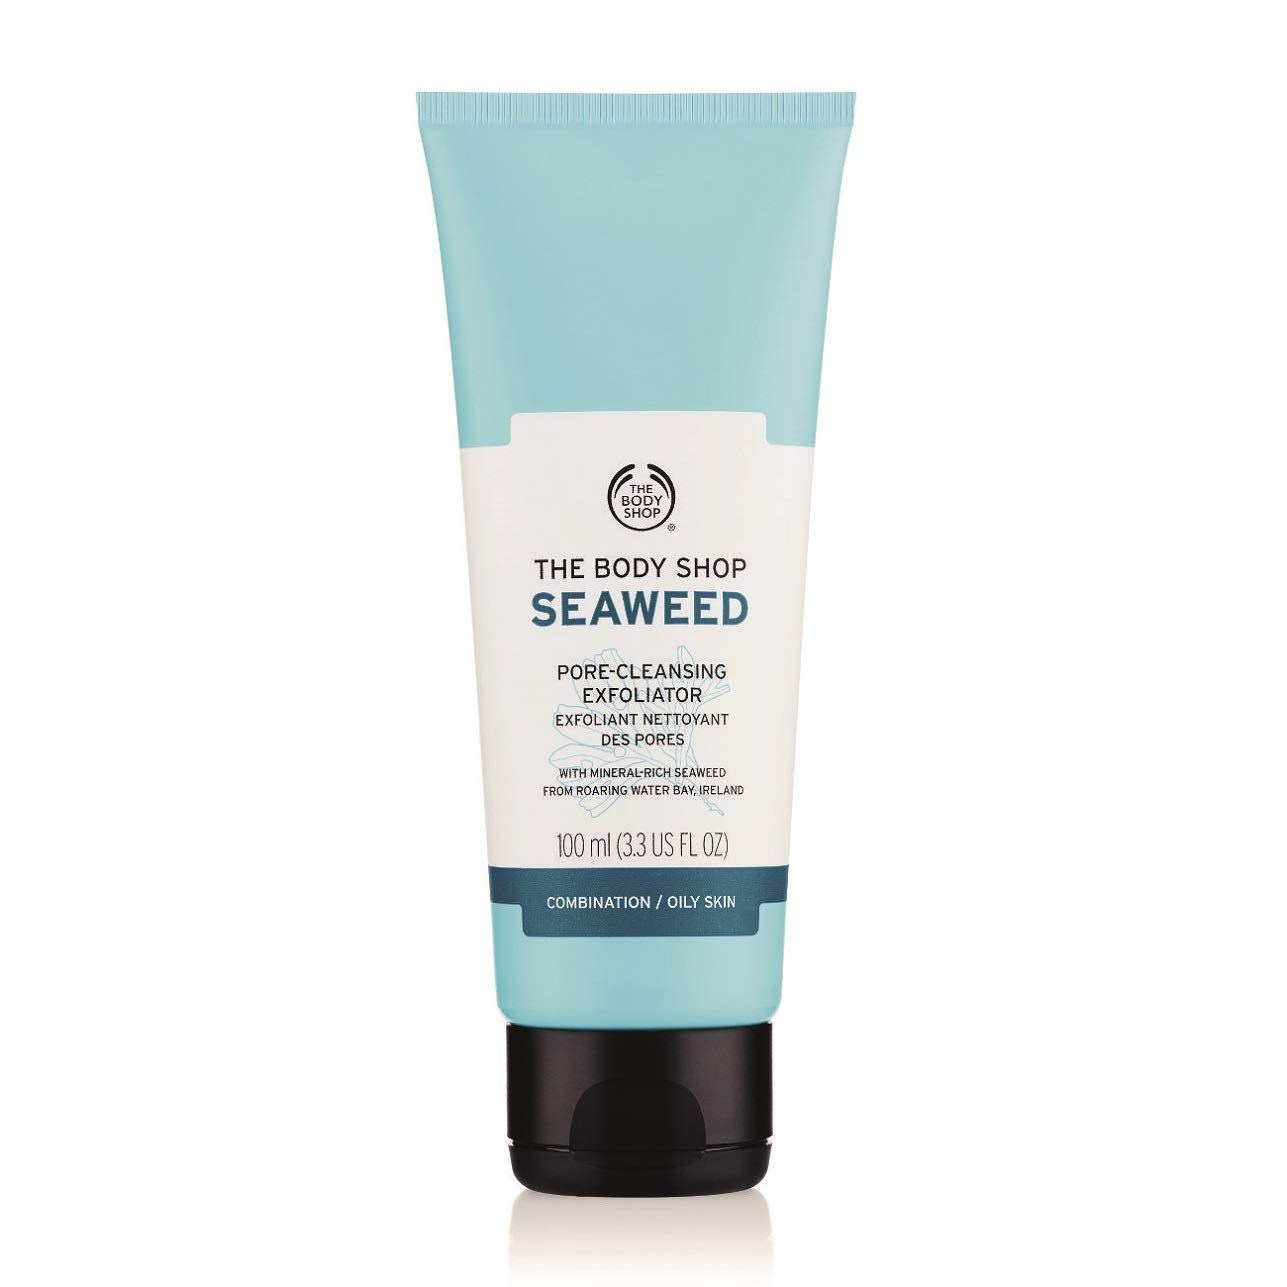   THE BODY SHOP Seaweed Pore-Cleansing Facial Exfoliator giúp loại bỏ tế bào chết và bụi bẩn, làm sạch lỗ chân lông.   